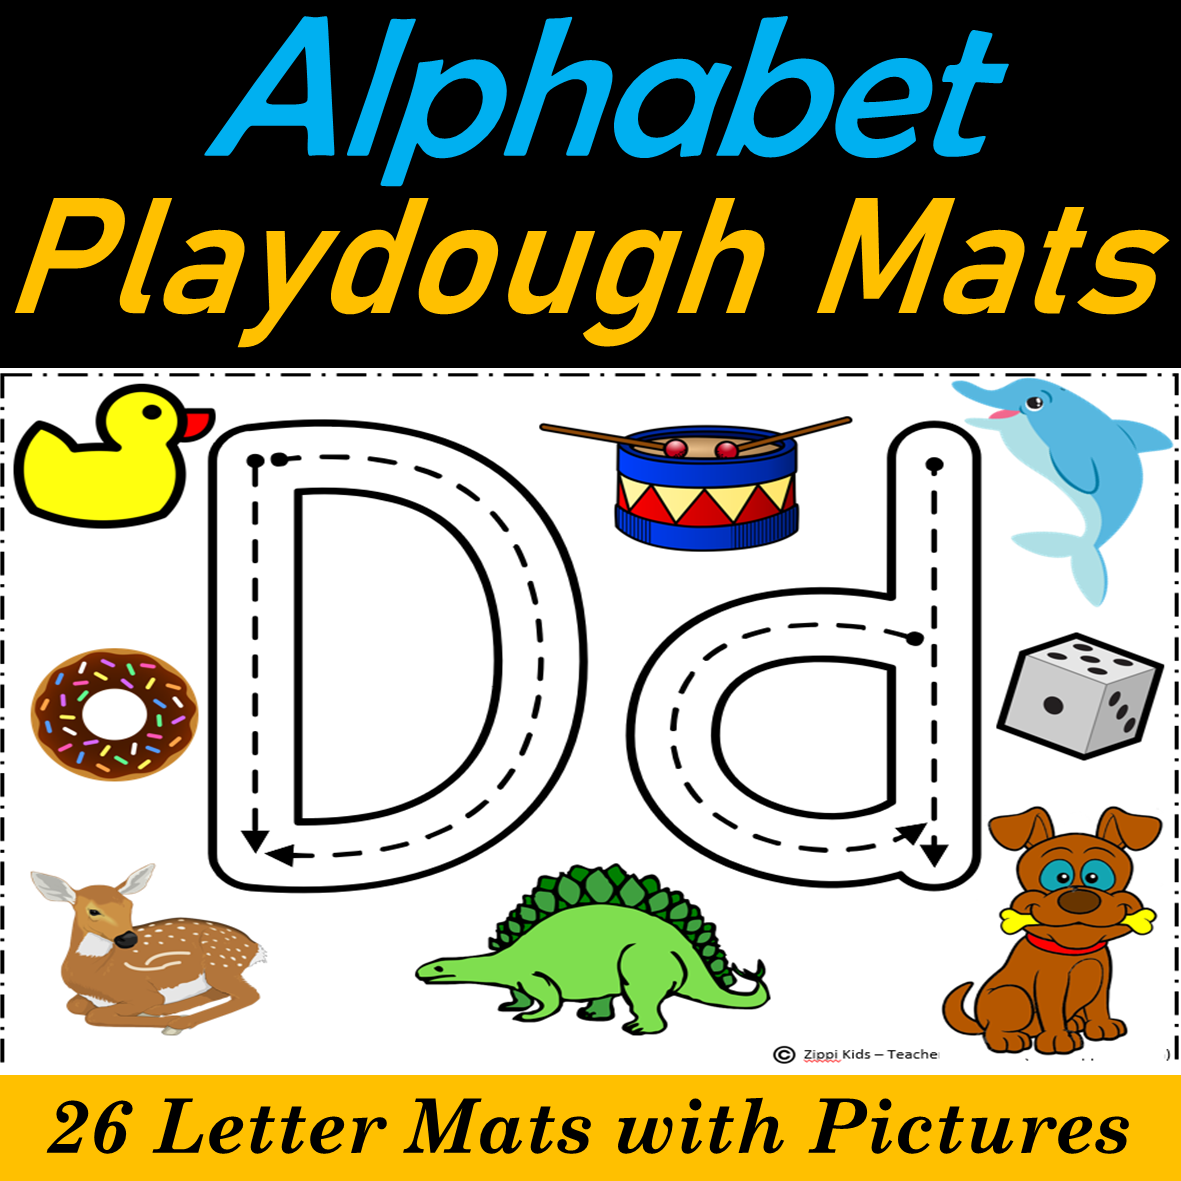 Alphabet Playdough Mats, Play Dough Mats